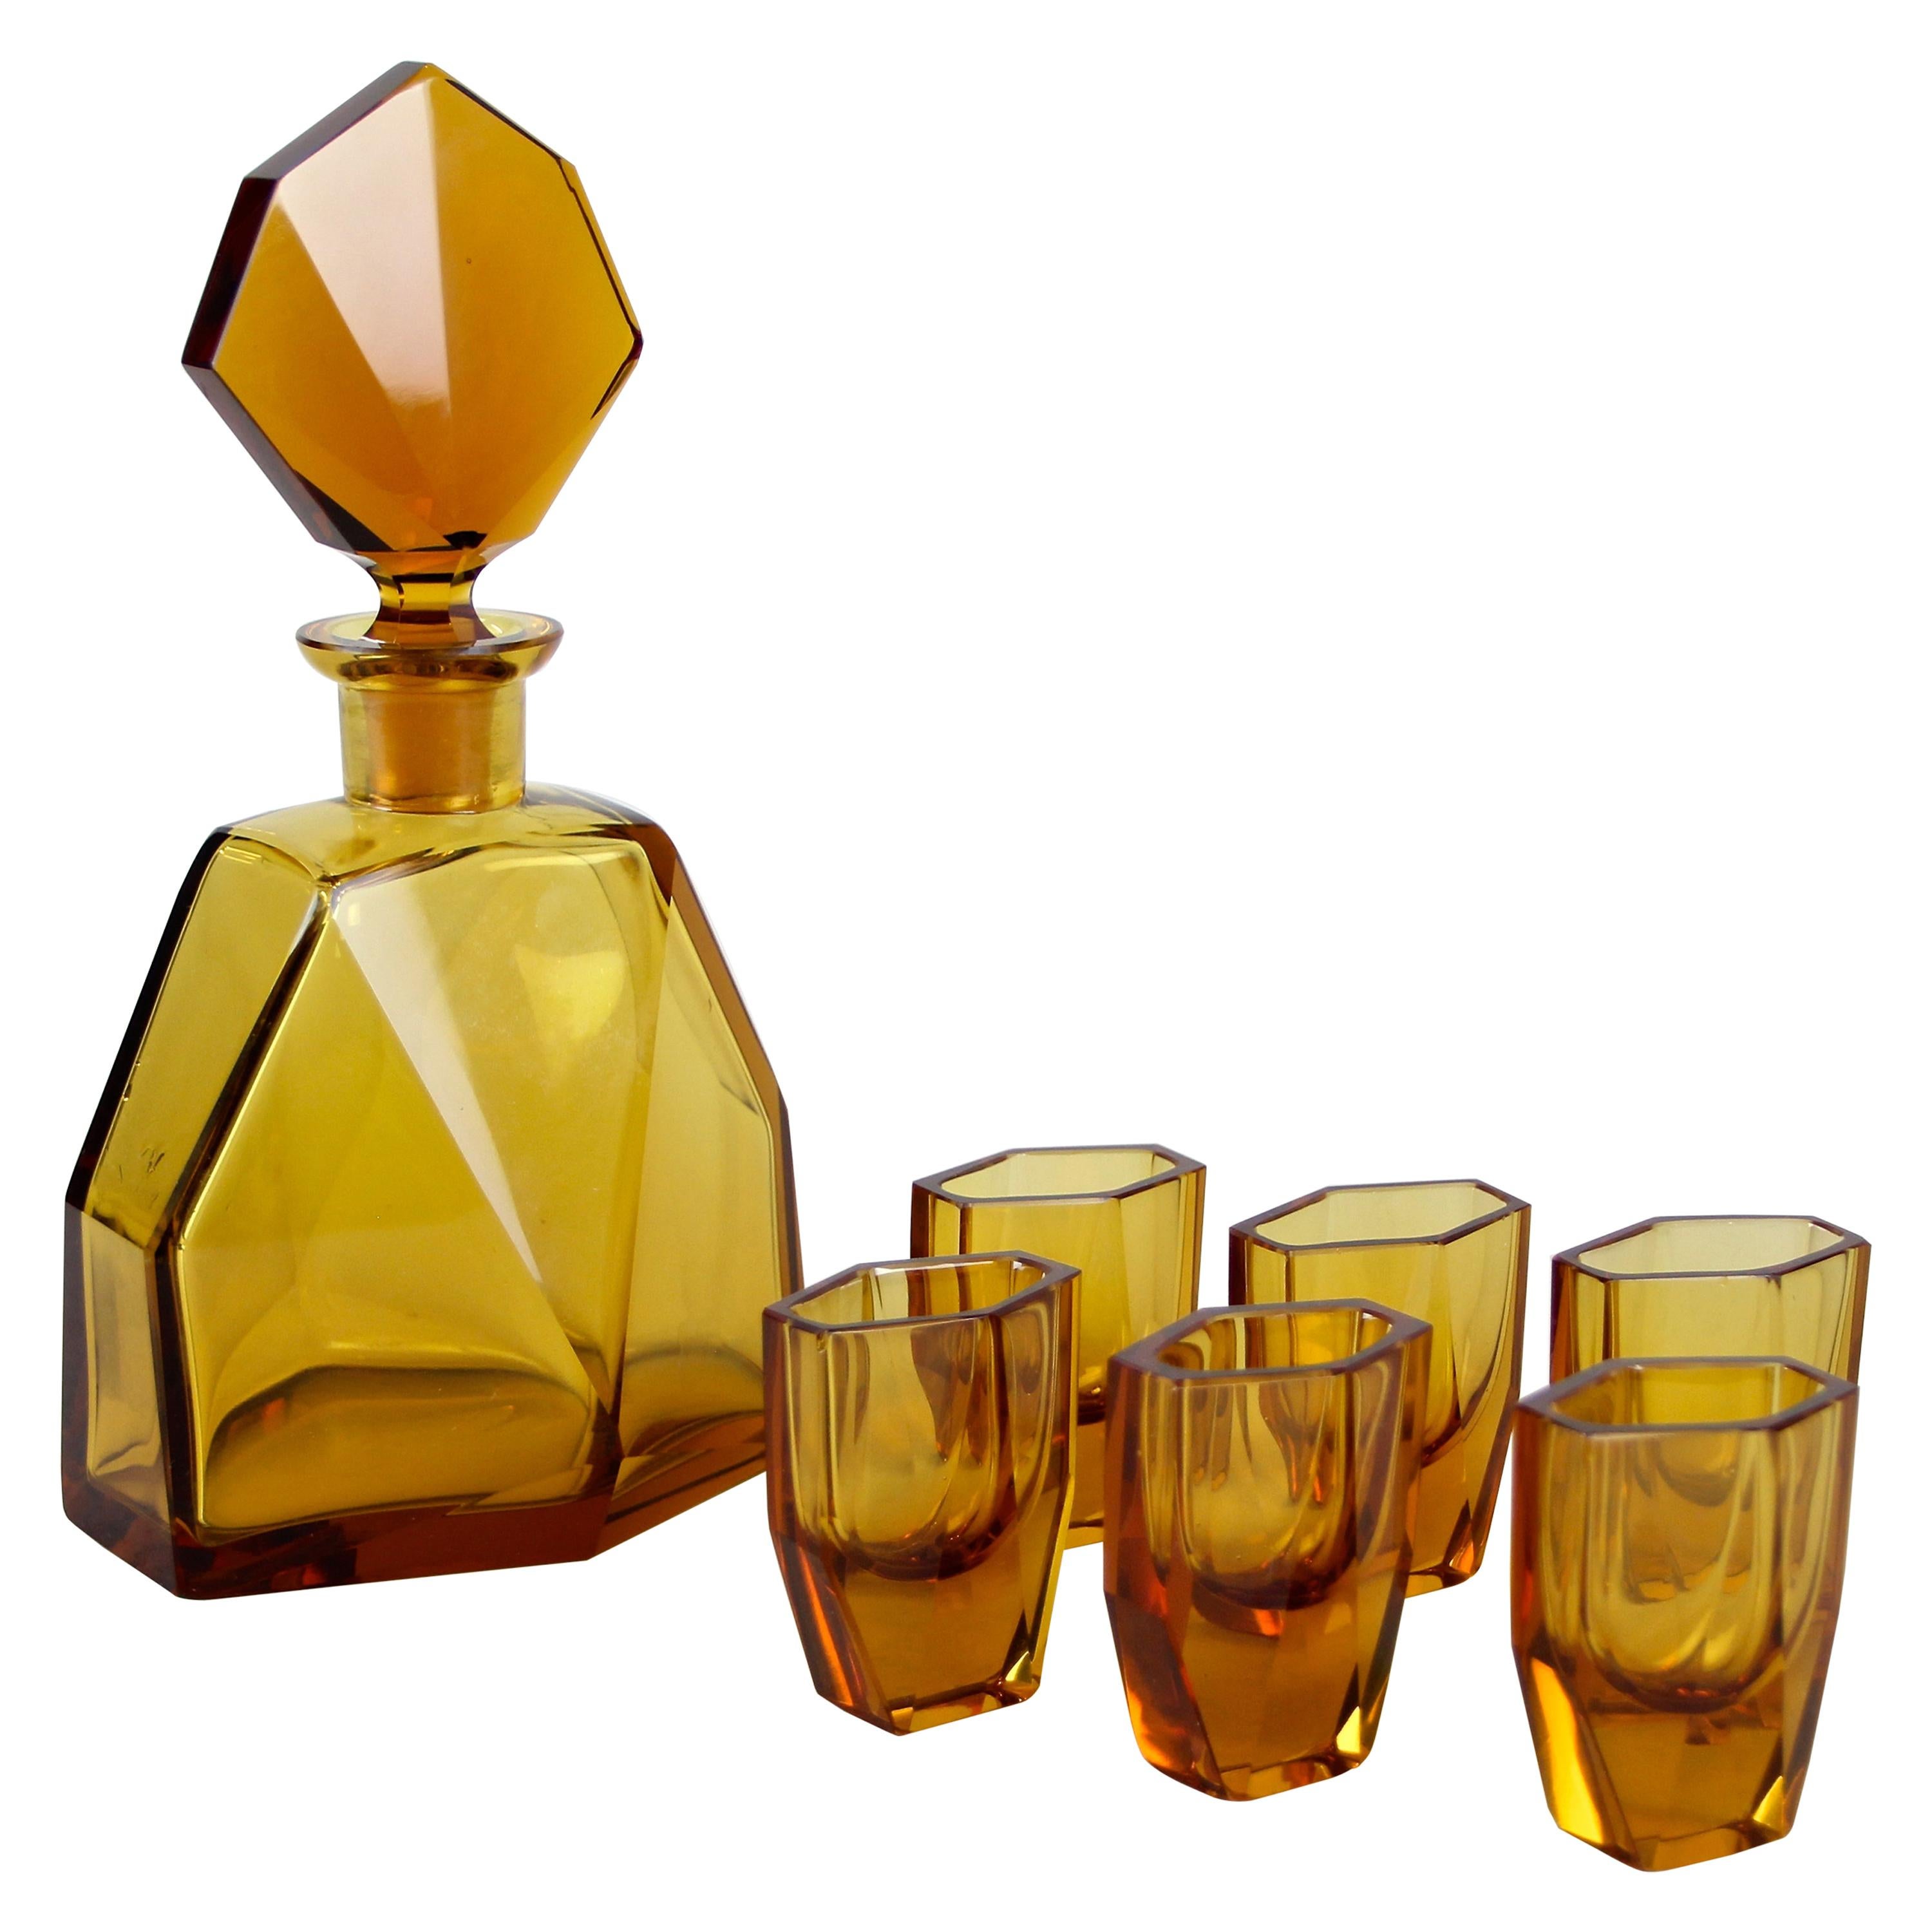 Art Deco Design Glass Liquor Set Amber-Colored, CZ, circa 1925